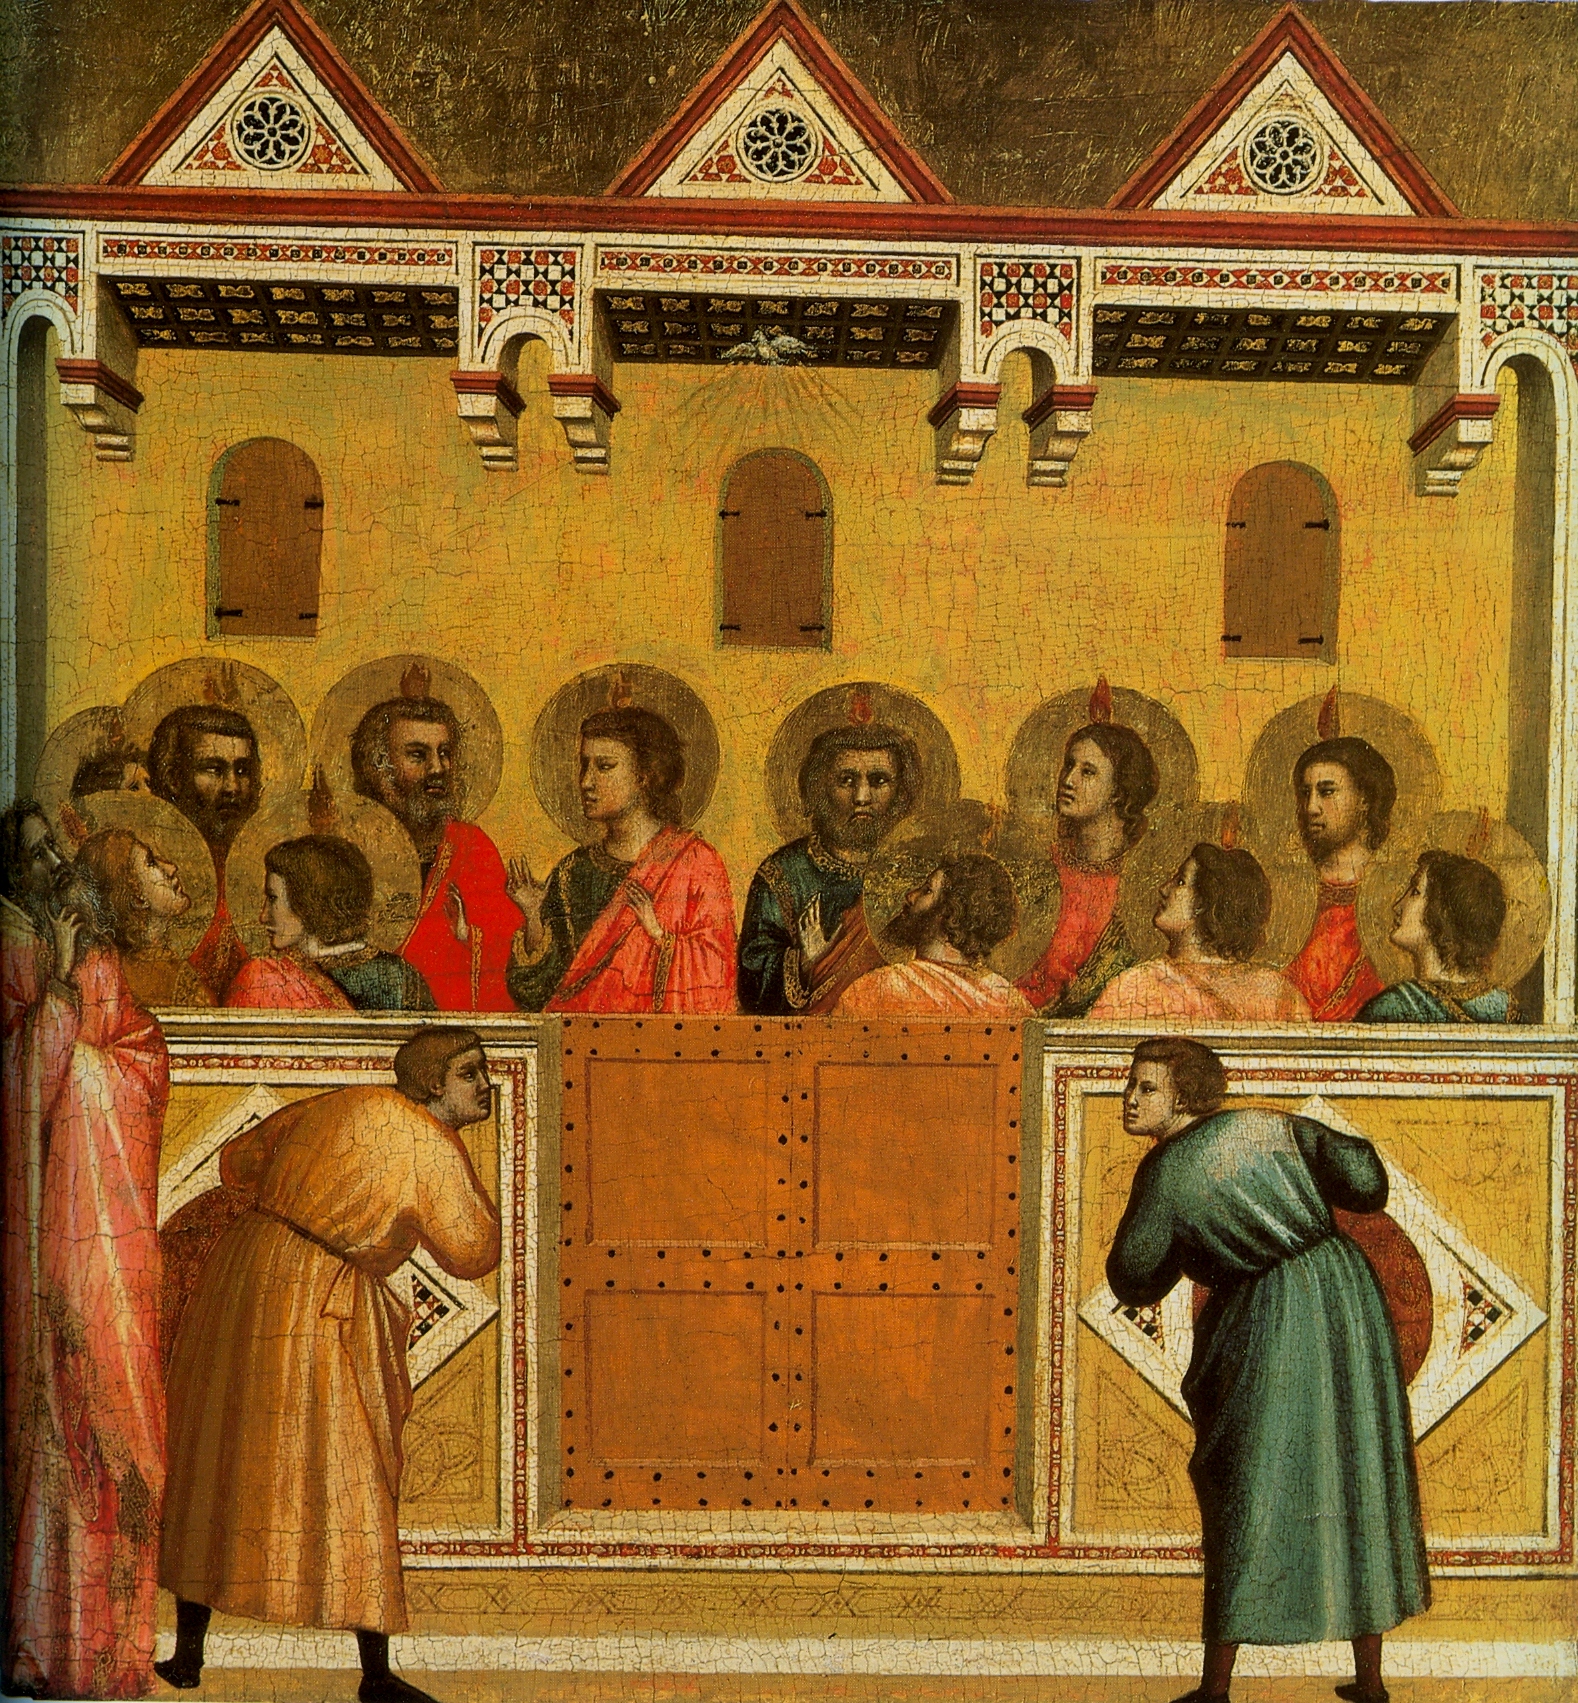 Giotto di Bondone, Pentecost, 1320-25